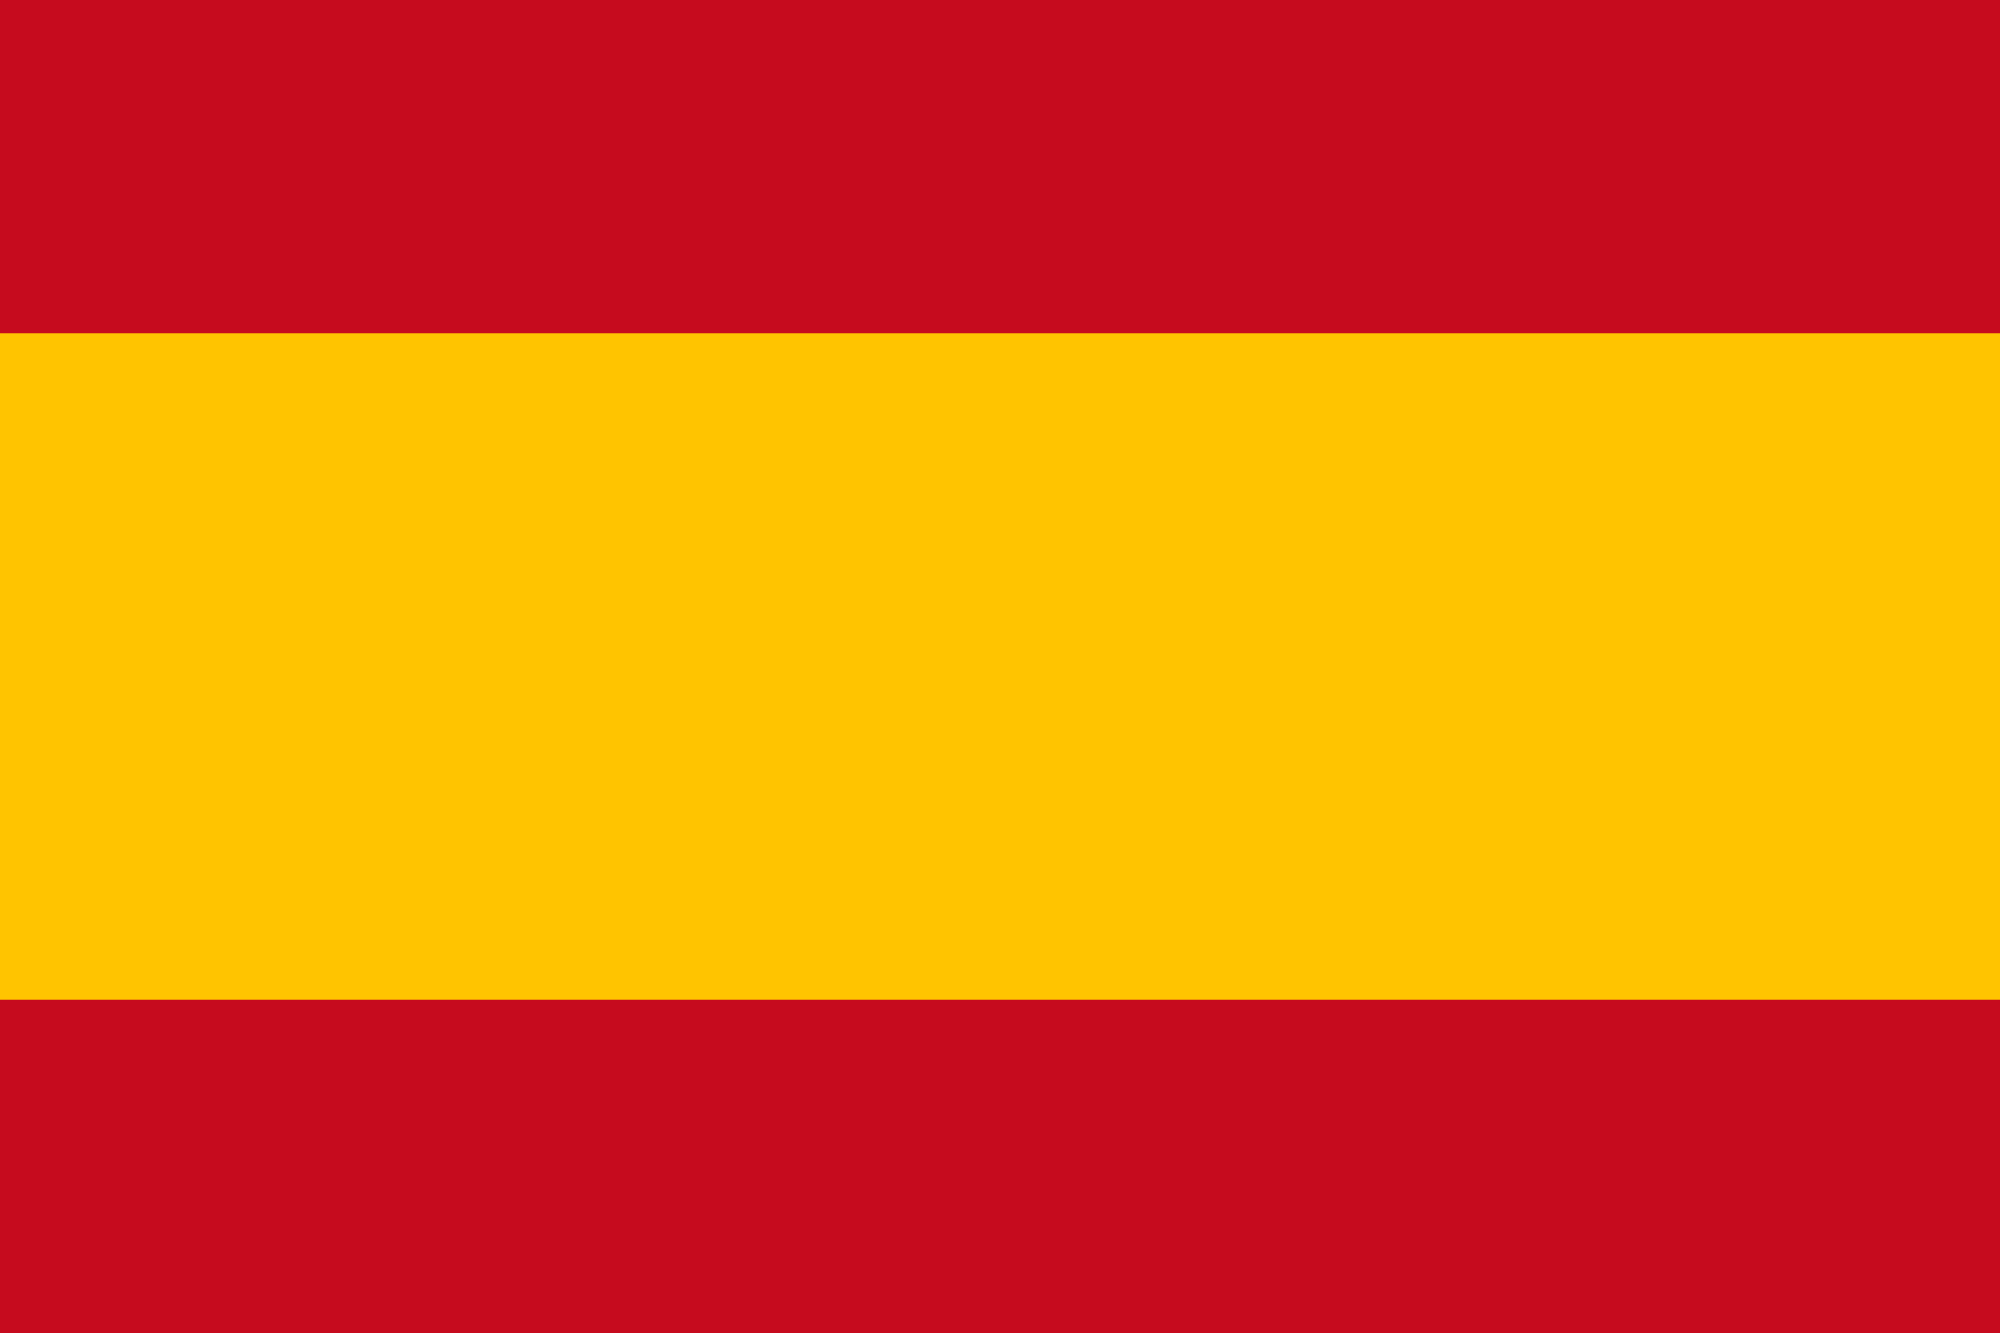 Spain (Civil flag)